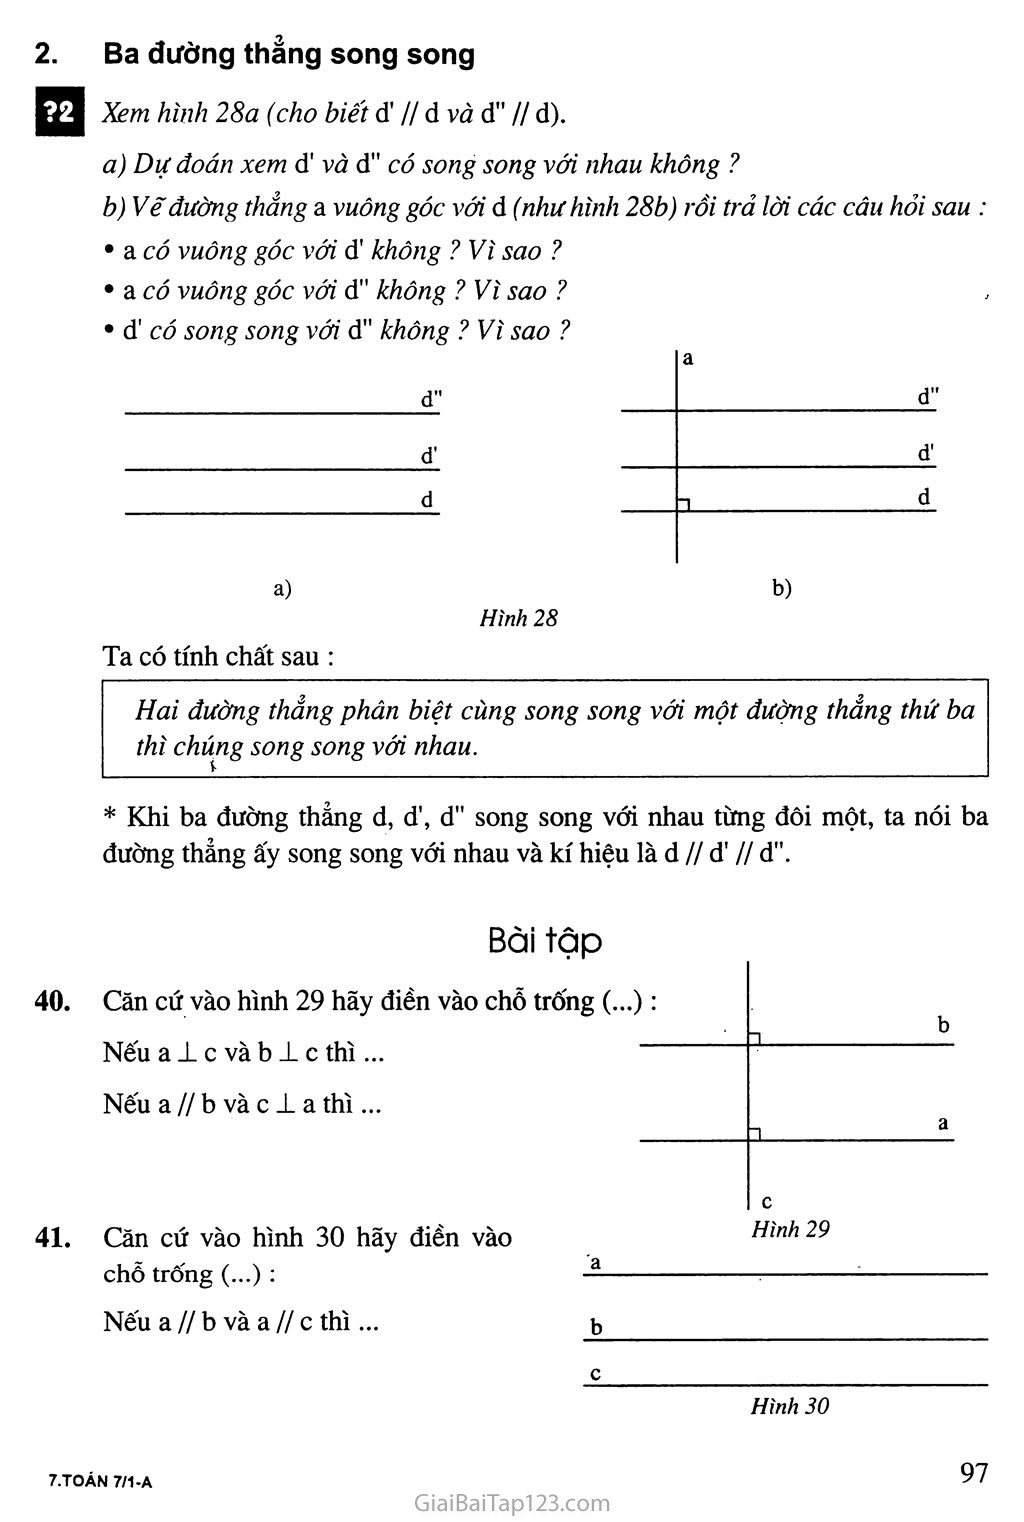 Bài 6. Từ vuông góc đến song song trang 2